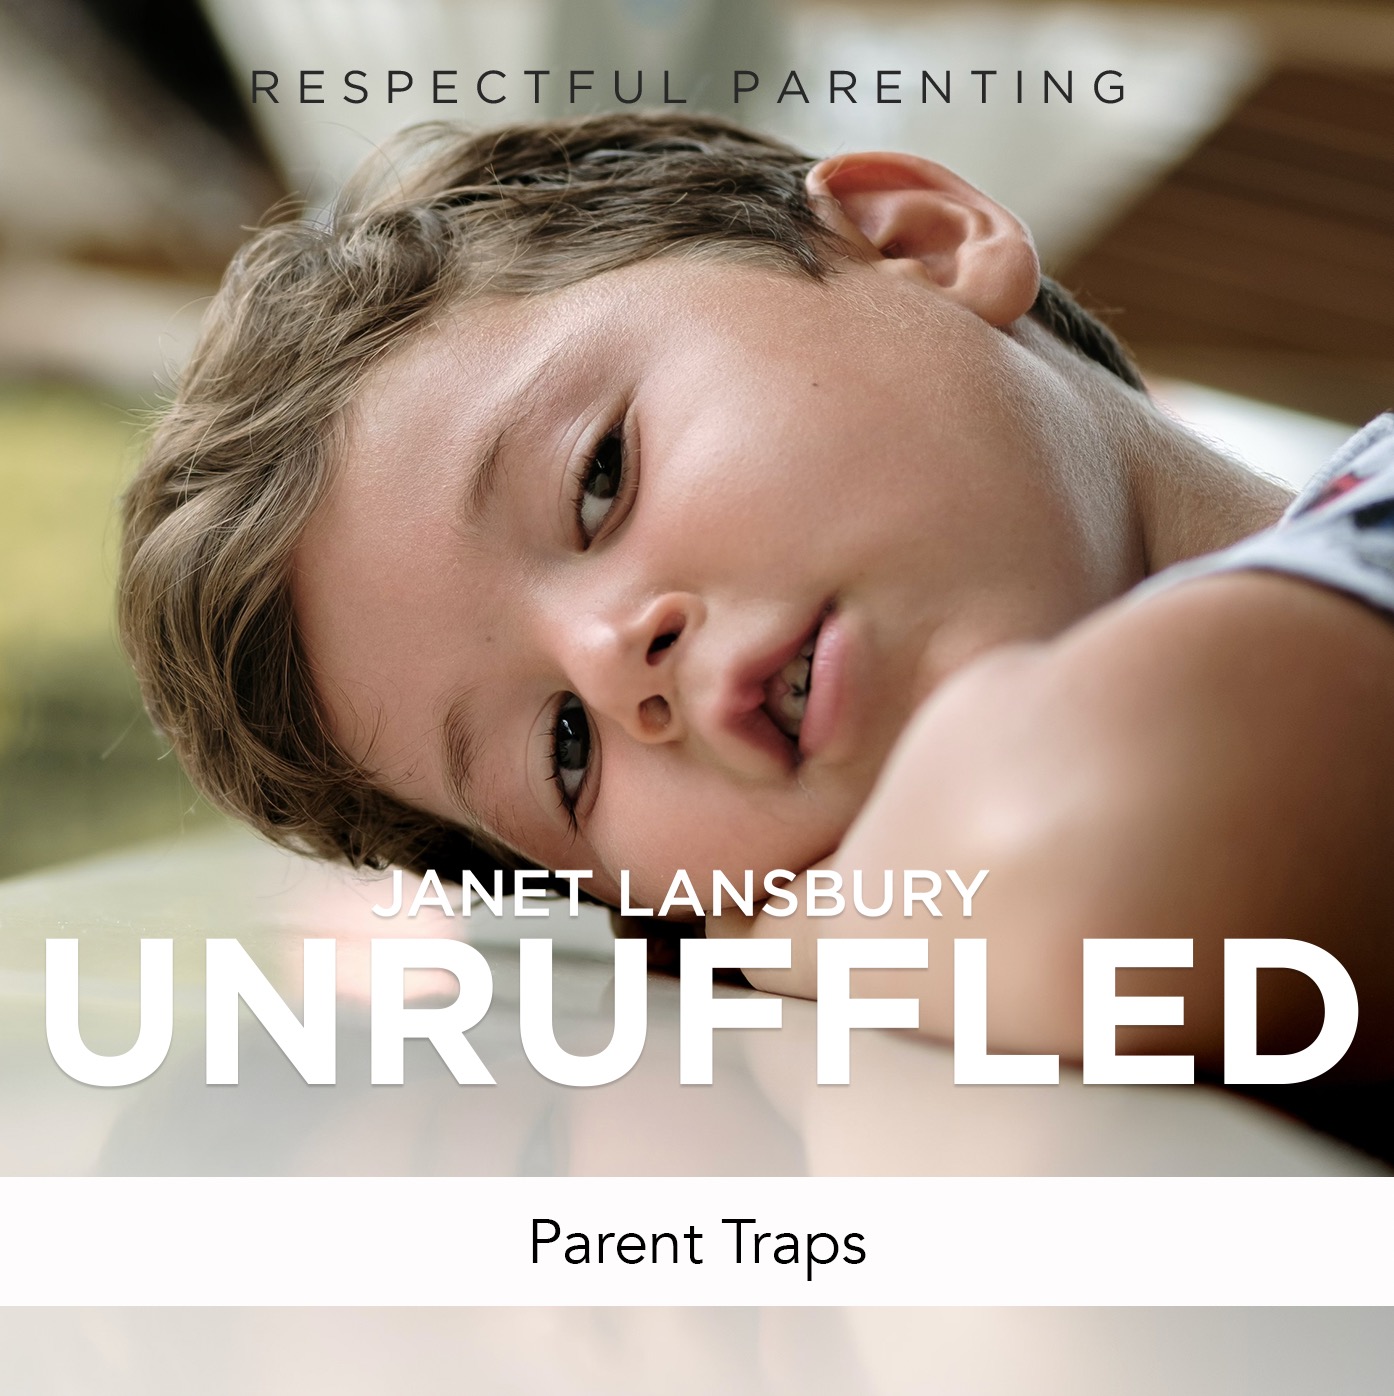 Parent Traps - Janet Lansbury